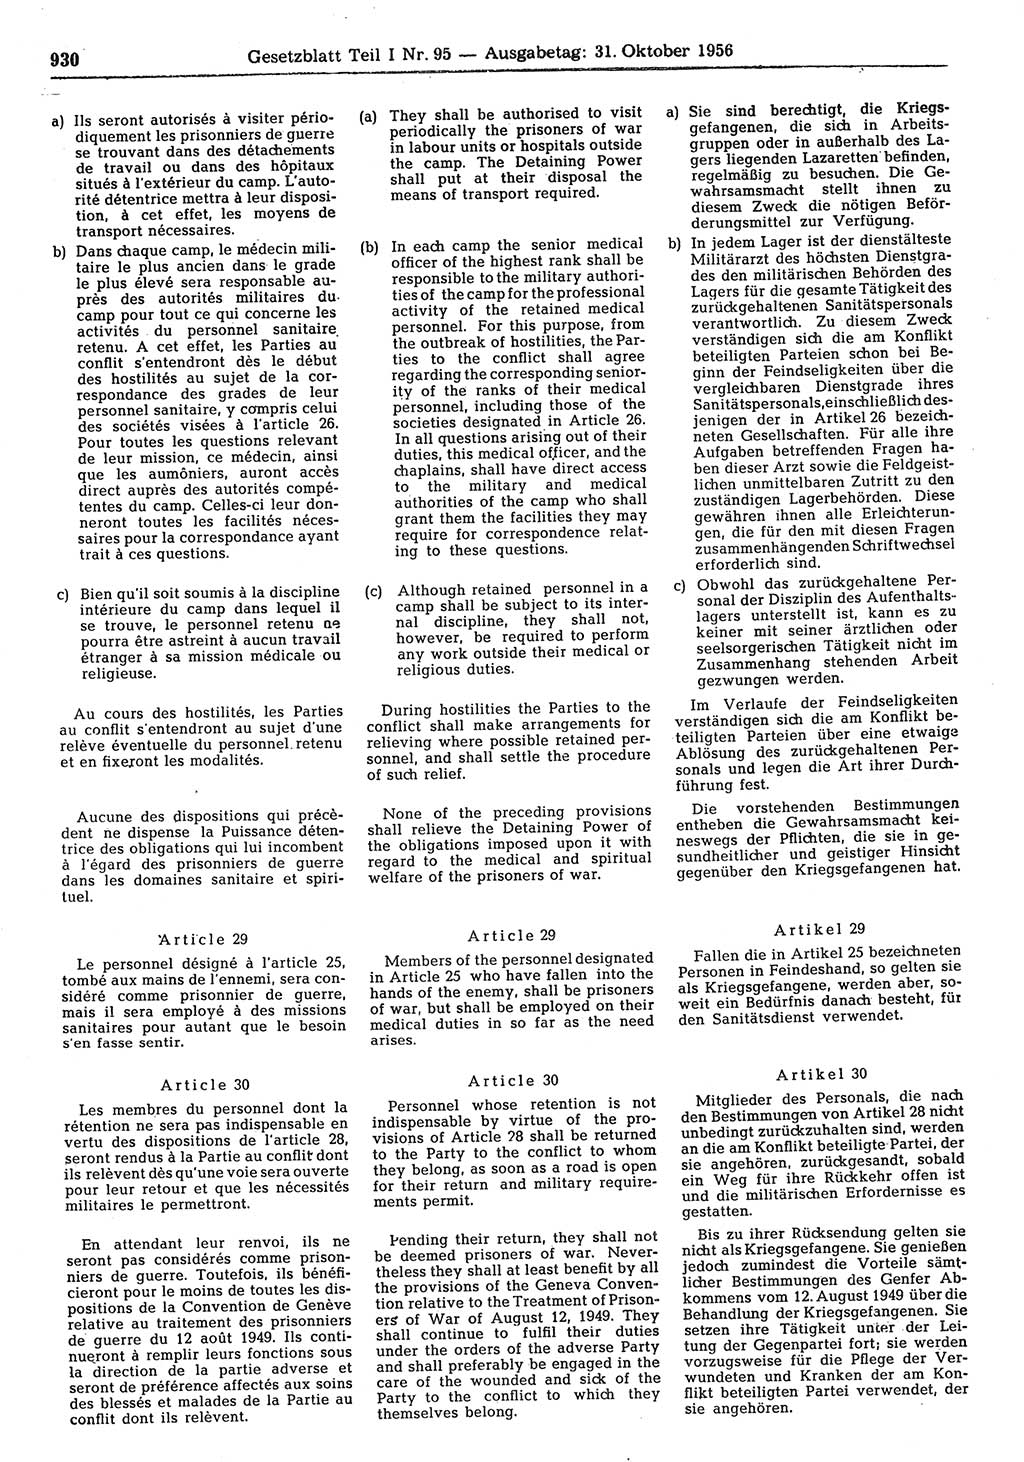 Gesetzblatt (GBl.) der Deutschen Demokratischen Republik (DDR) Teil Ⅰ 1956, Seite 930 (GBl. DDR Ⅰ 1956, S. 930)